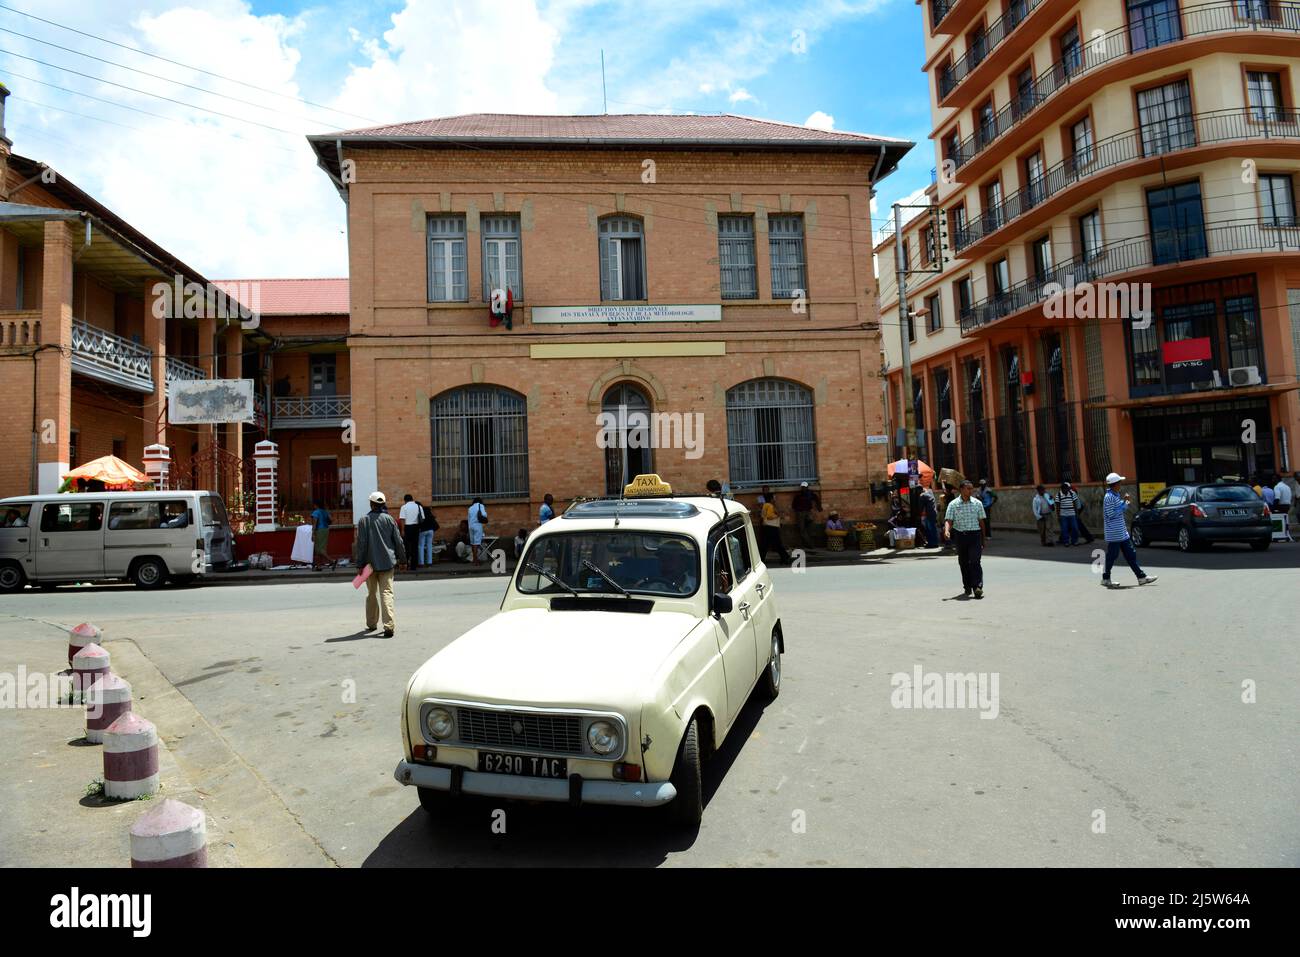 Schöne alte französische Kolonialbauten im Zentrum von Antananarivo, Madagaskar. Stockfoto